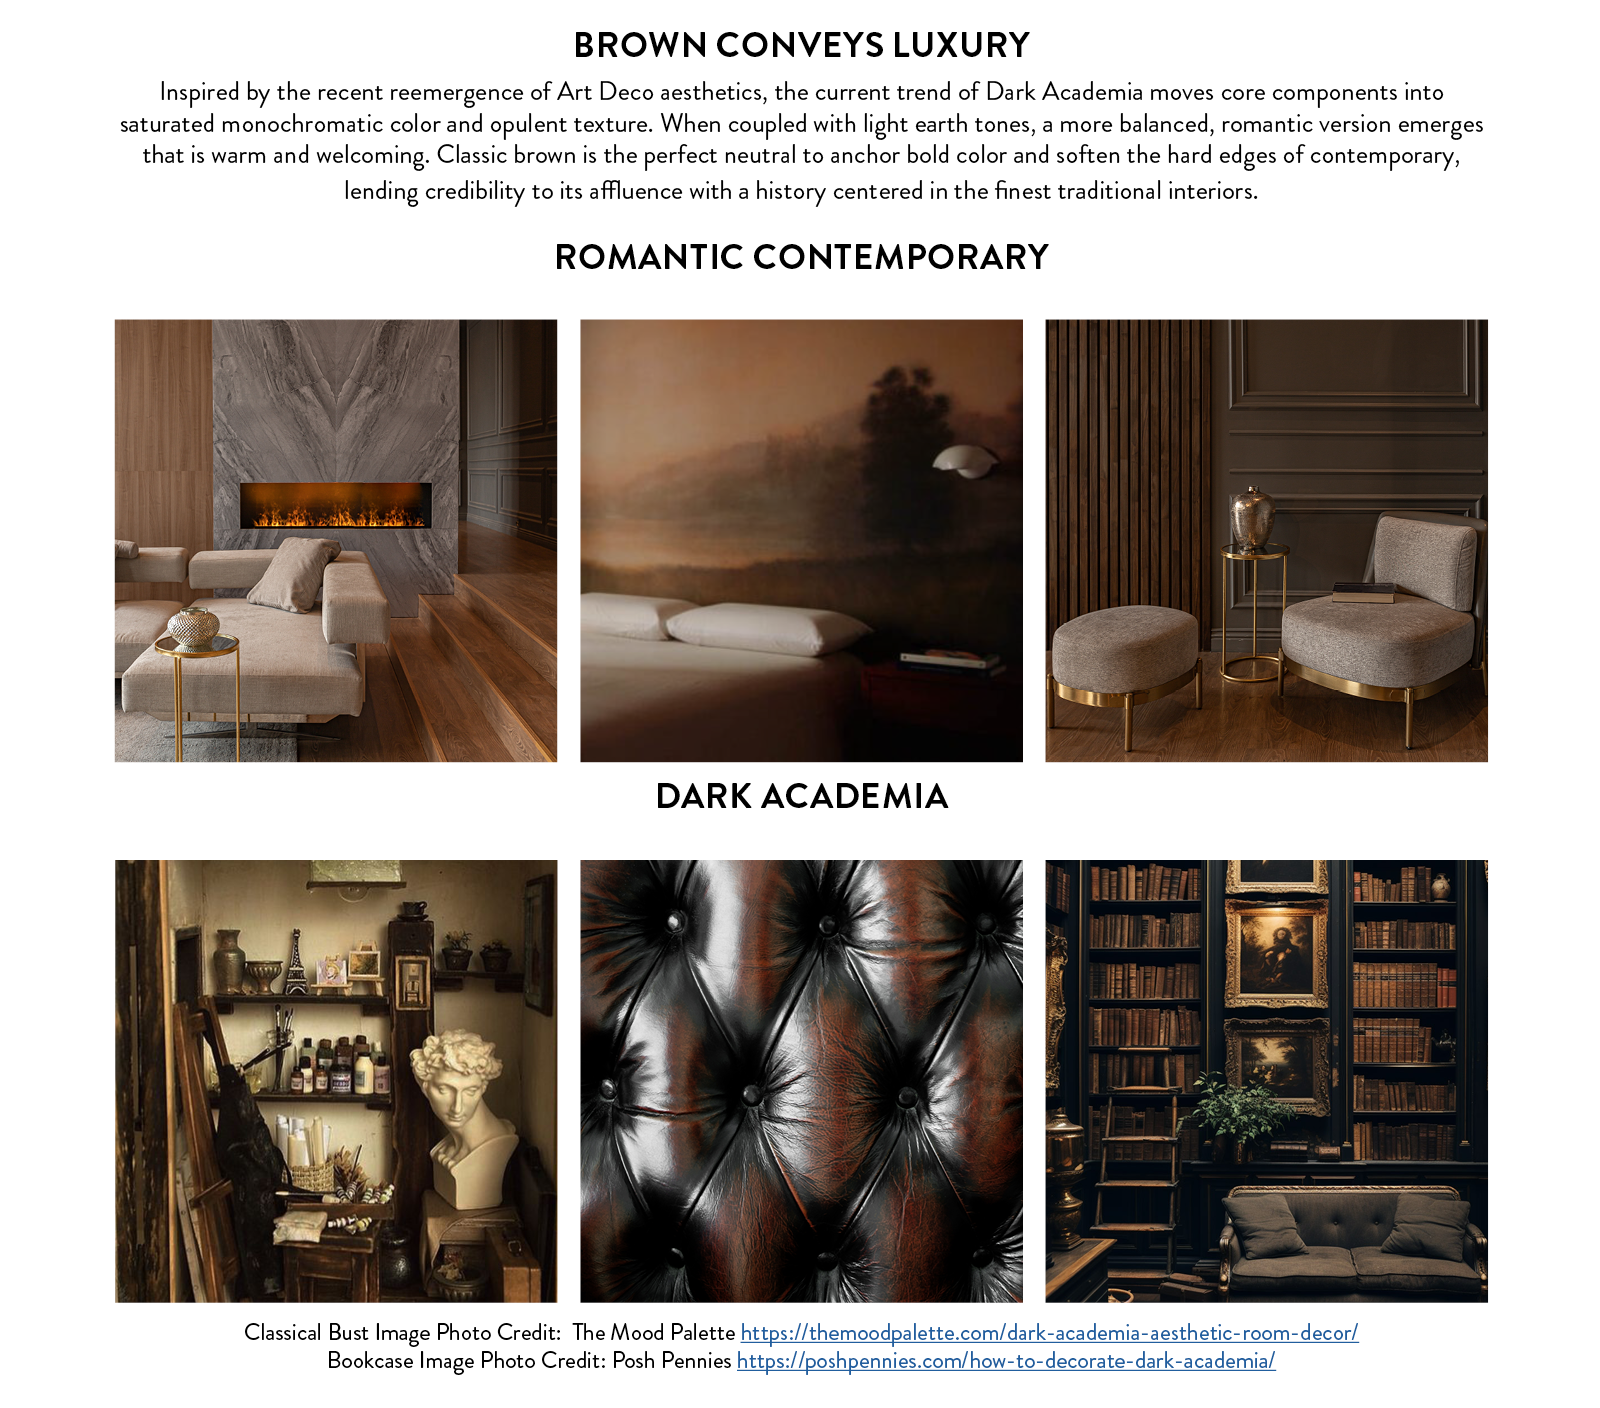 Brown conveys luxury